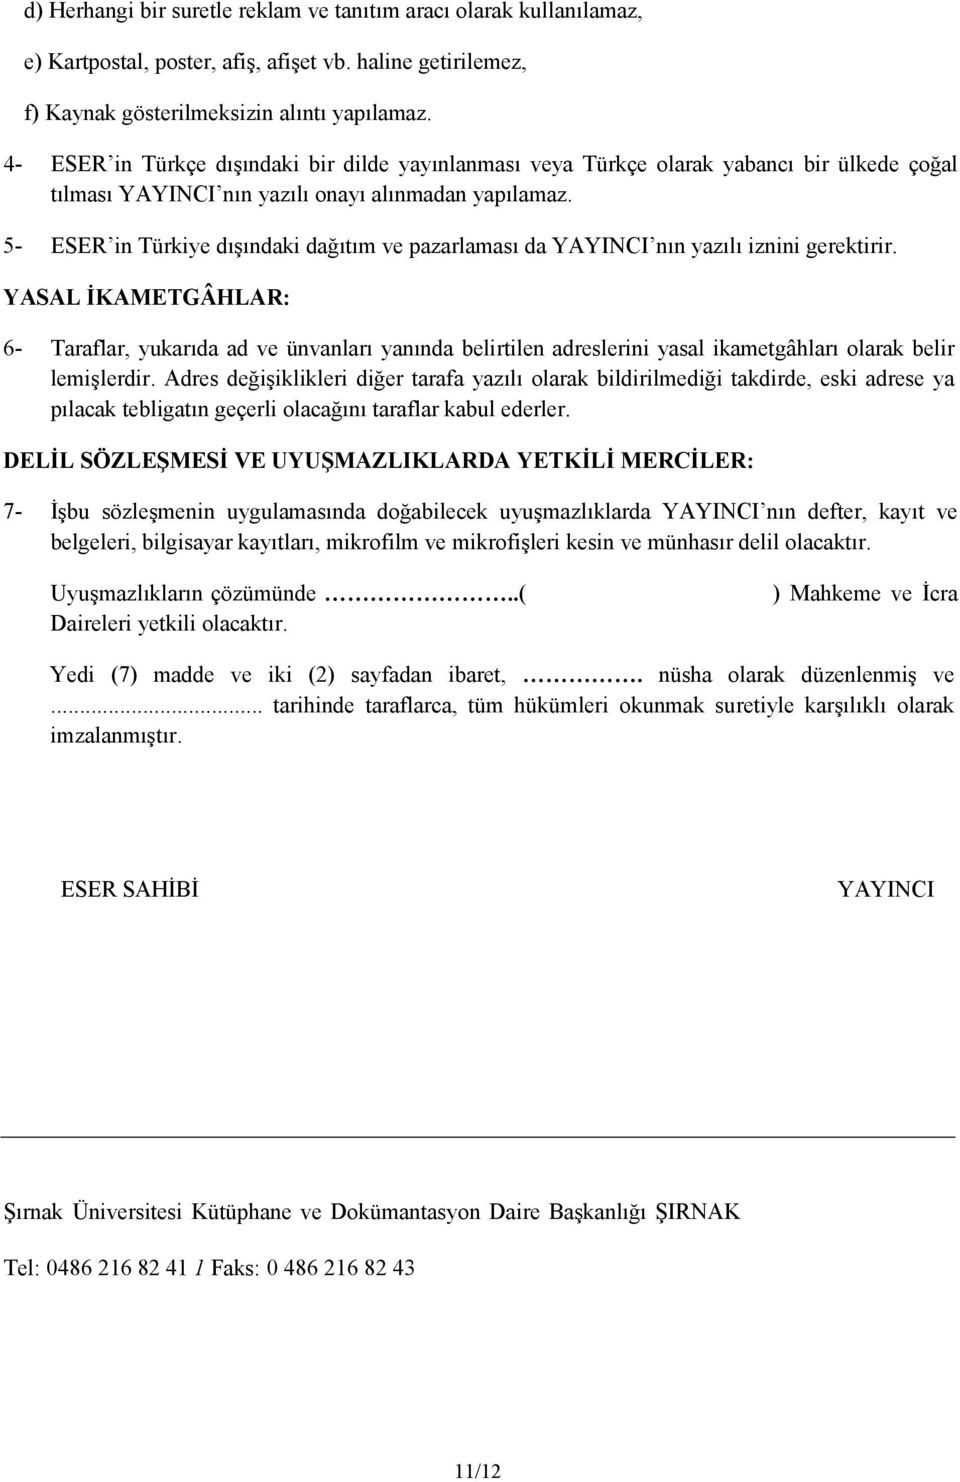 5- ESER in Türkiye dışındaki dağıtım ve pazarlaması da YAYINCI nın yazılı iznini gerektirir.